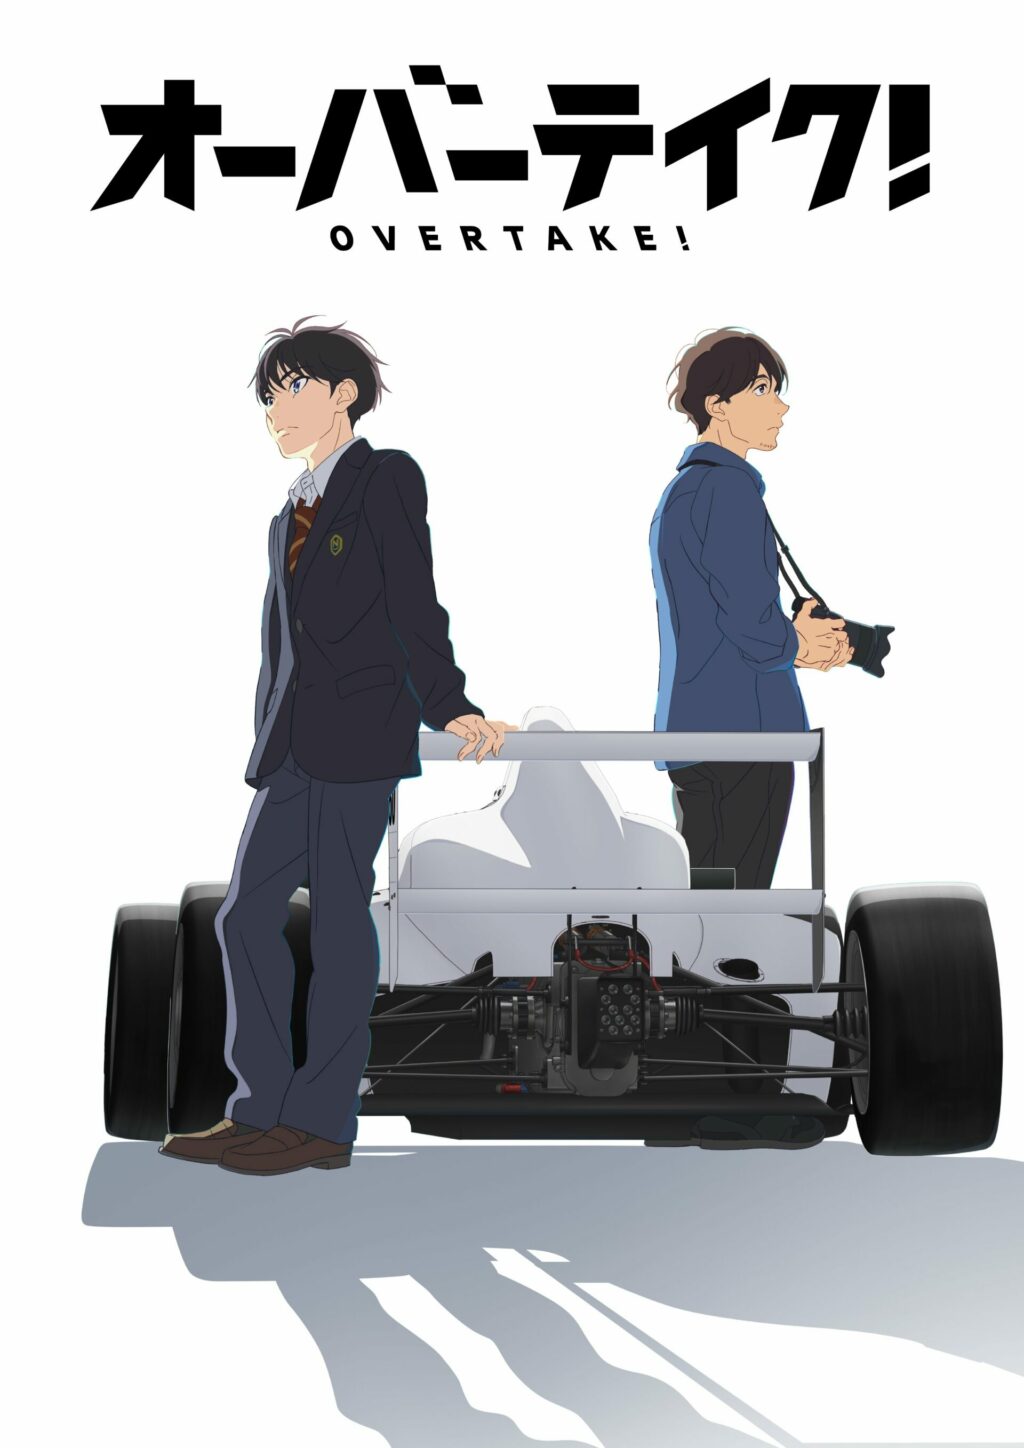 Overtake!: anime sobre corrida automobilística ganha trailer oficial